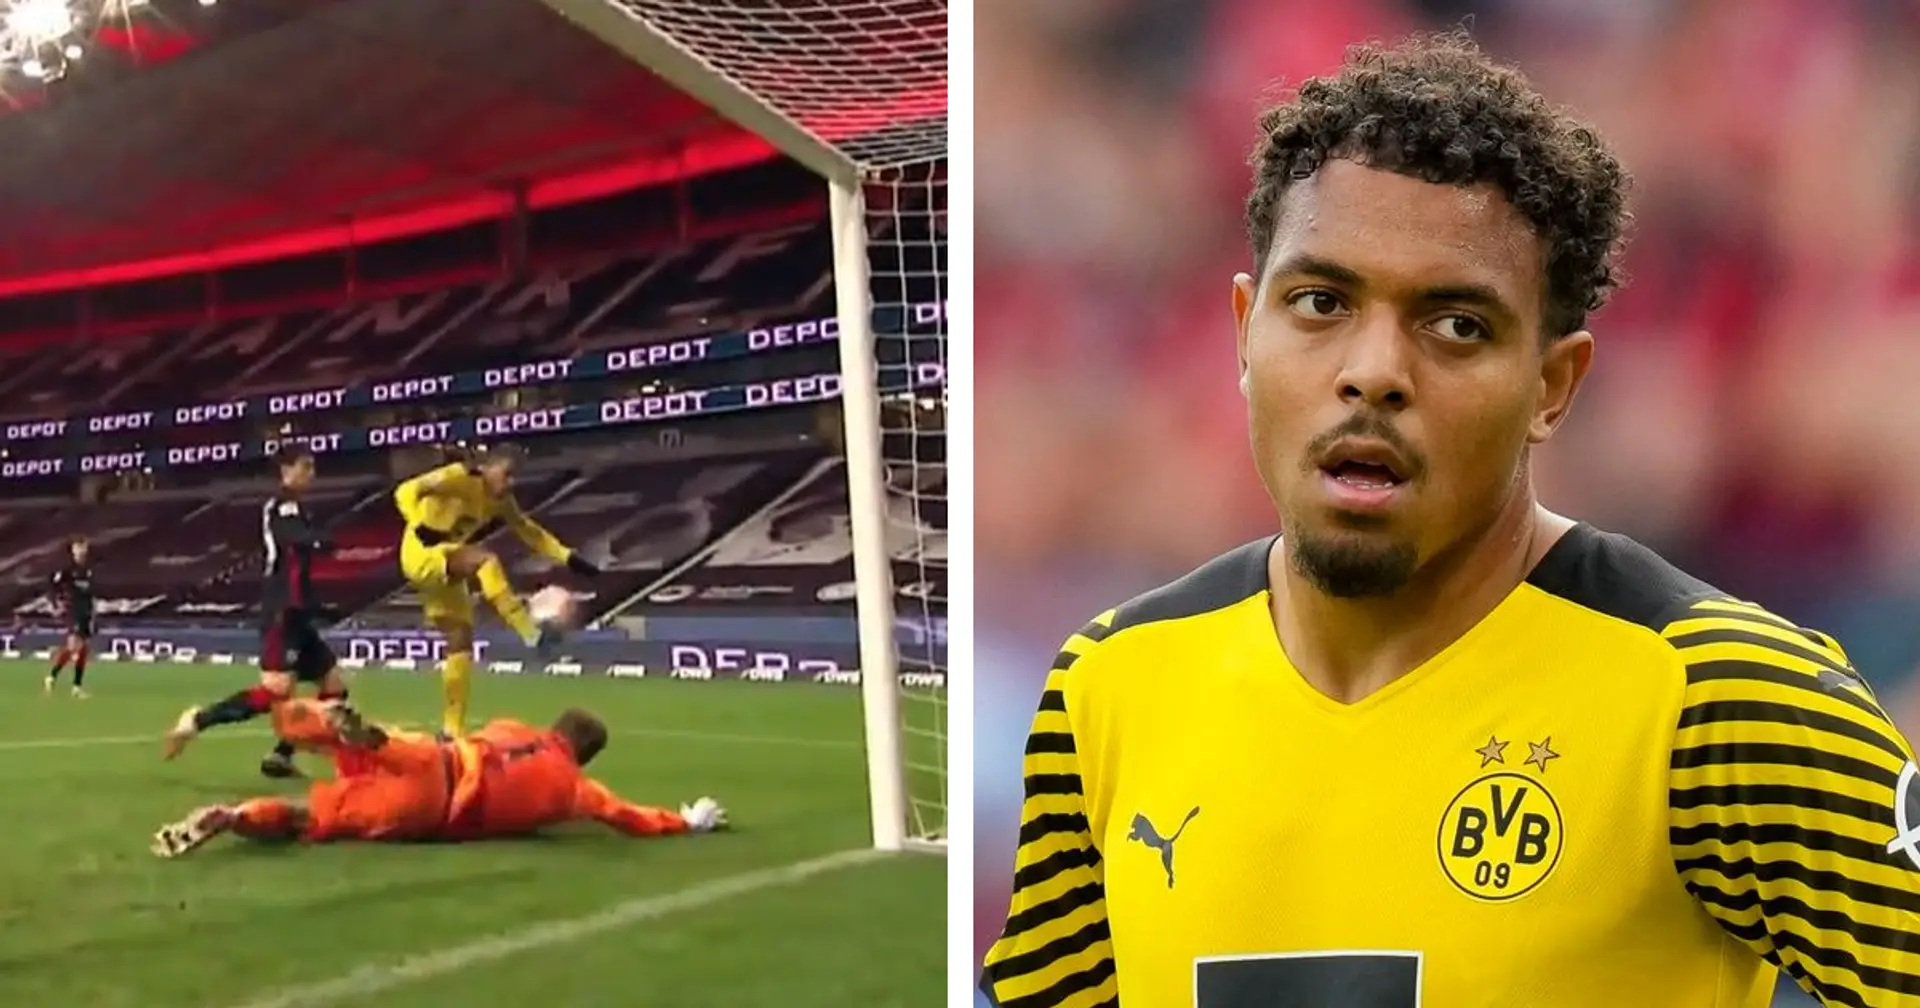 "Ich hoffe sehr, dass ich mich täusche...": BVB-Fan sieht Malens Zukunft bei Dortmund pessimistisch